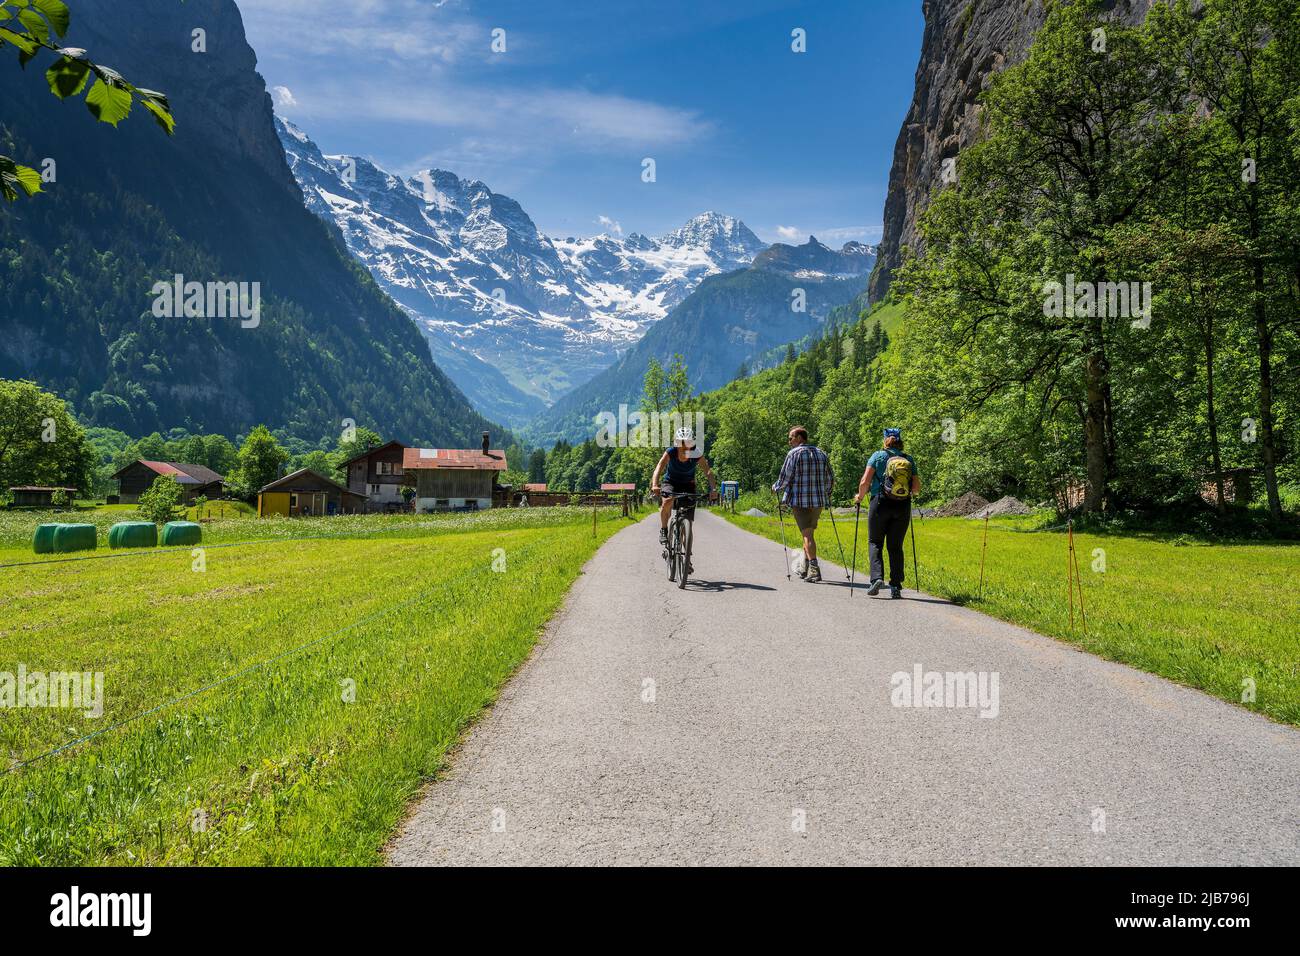 Cycliste et randonneur sur un sentier pavé aux Alpes suisses enneigées en premier plan, Lauterbrunnen, canton de Berne, Suisse Banque D'Images